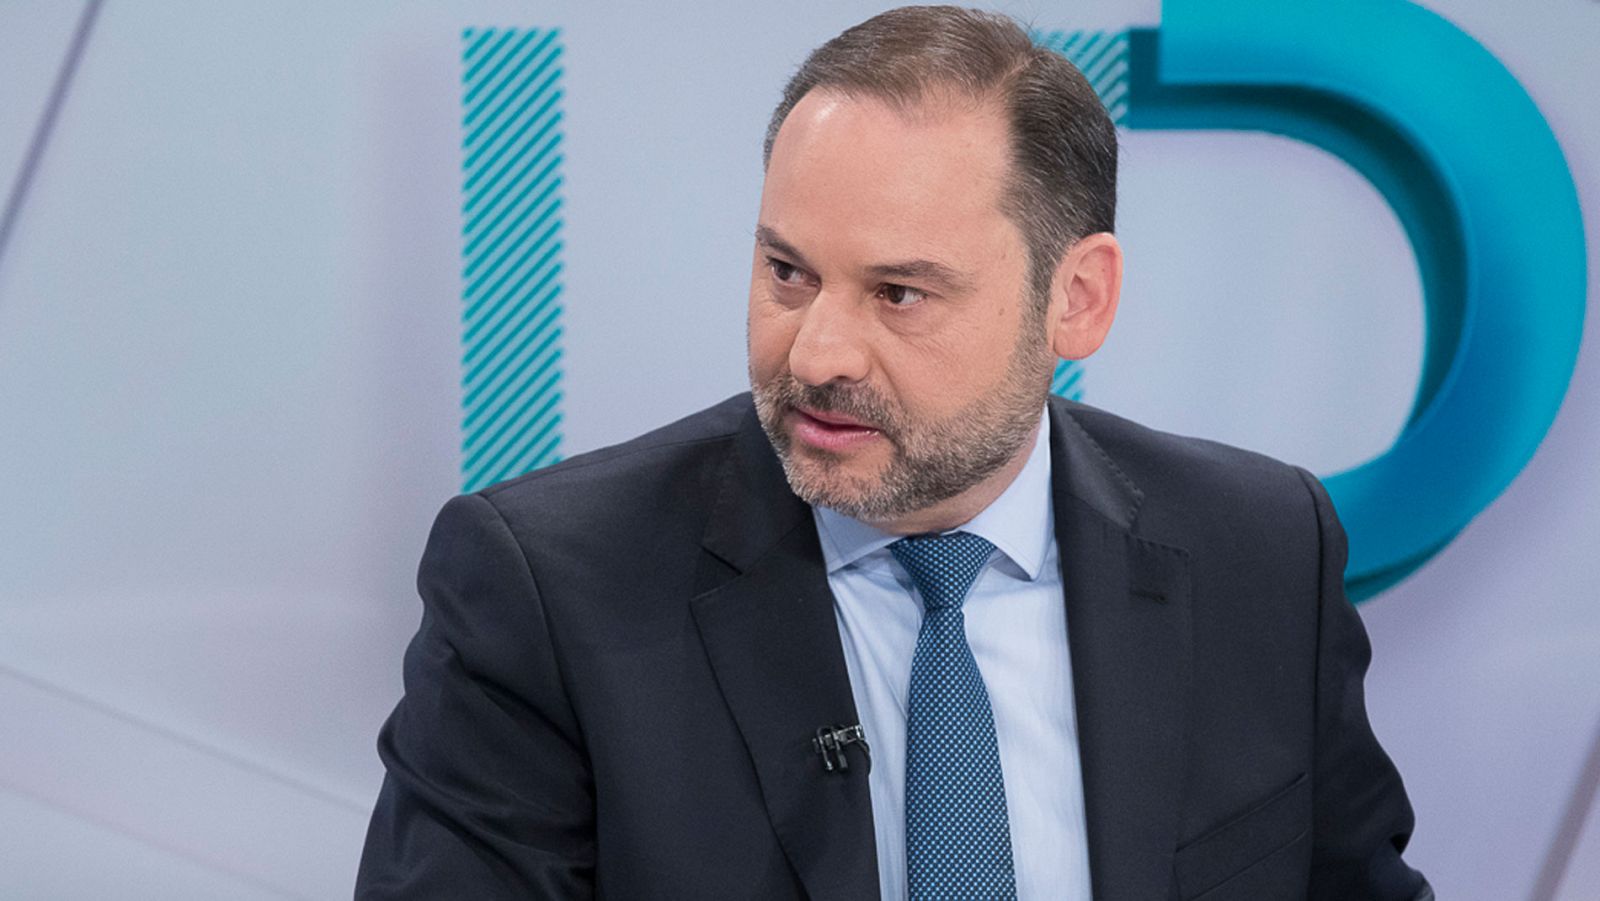 Elecciones generales 2019 | Ábalos justifica la ausencia de Sánchez en un debate en TVE como una estrategia electoral "interesada"